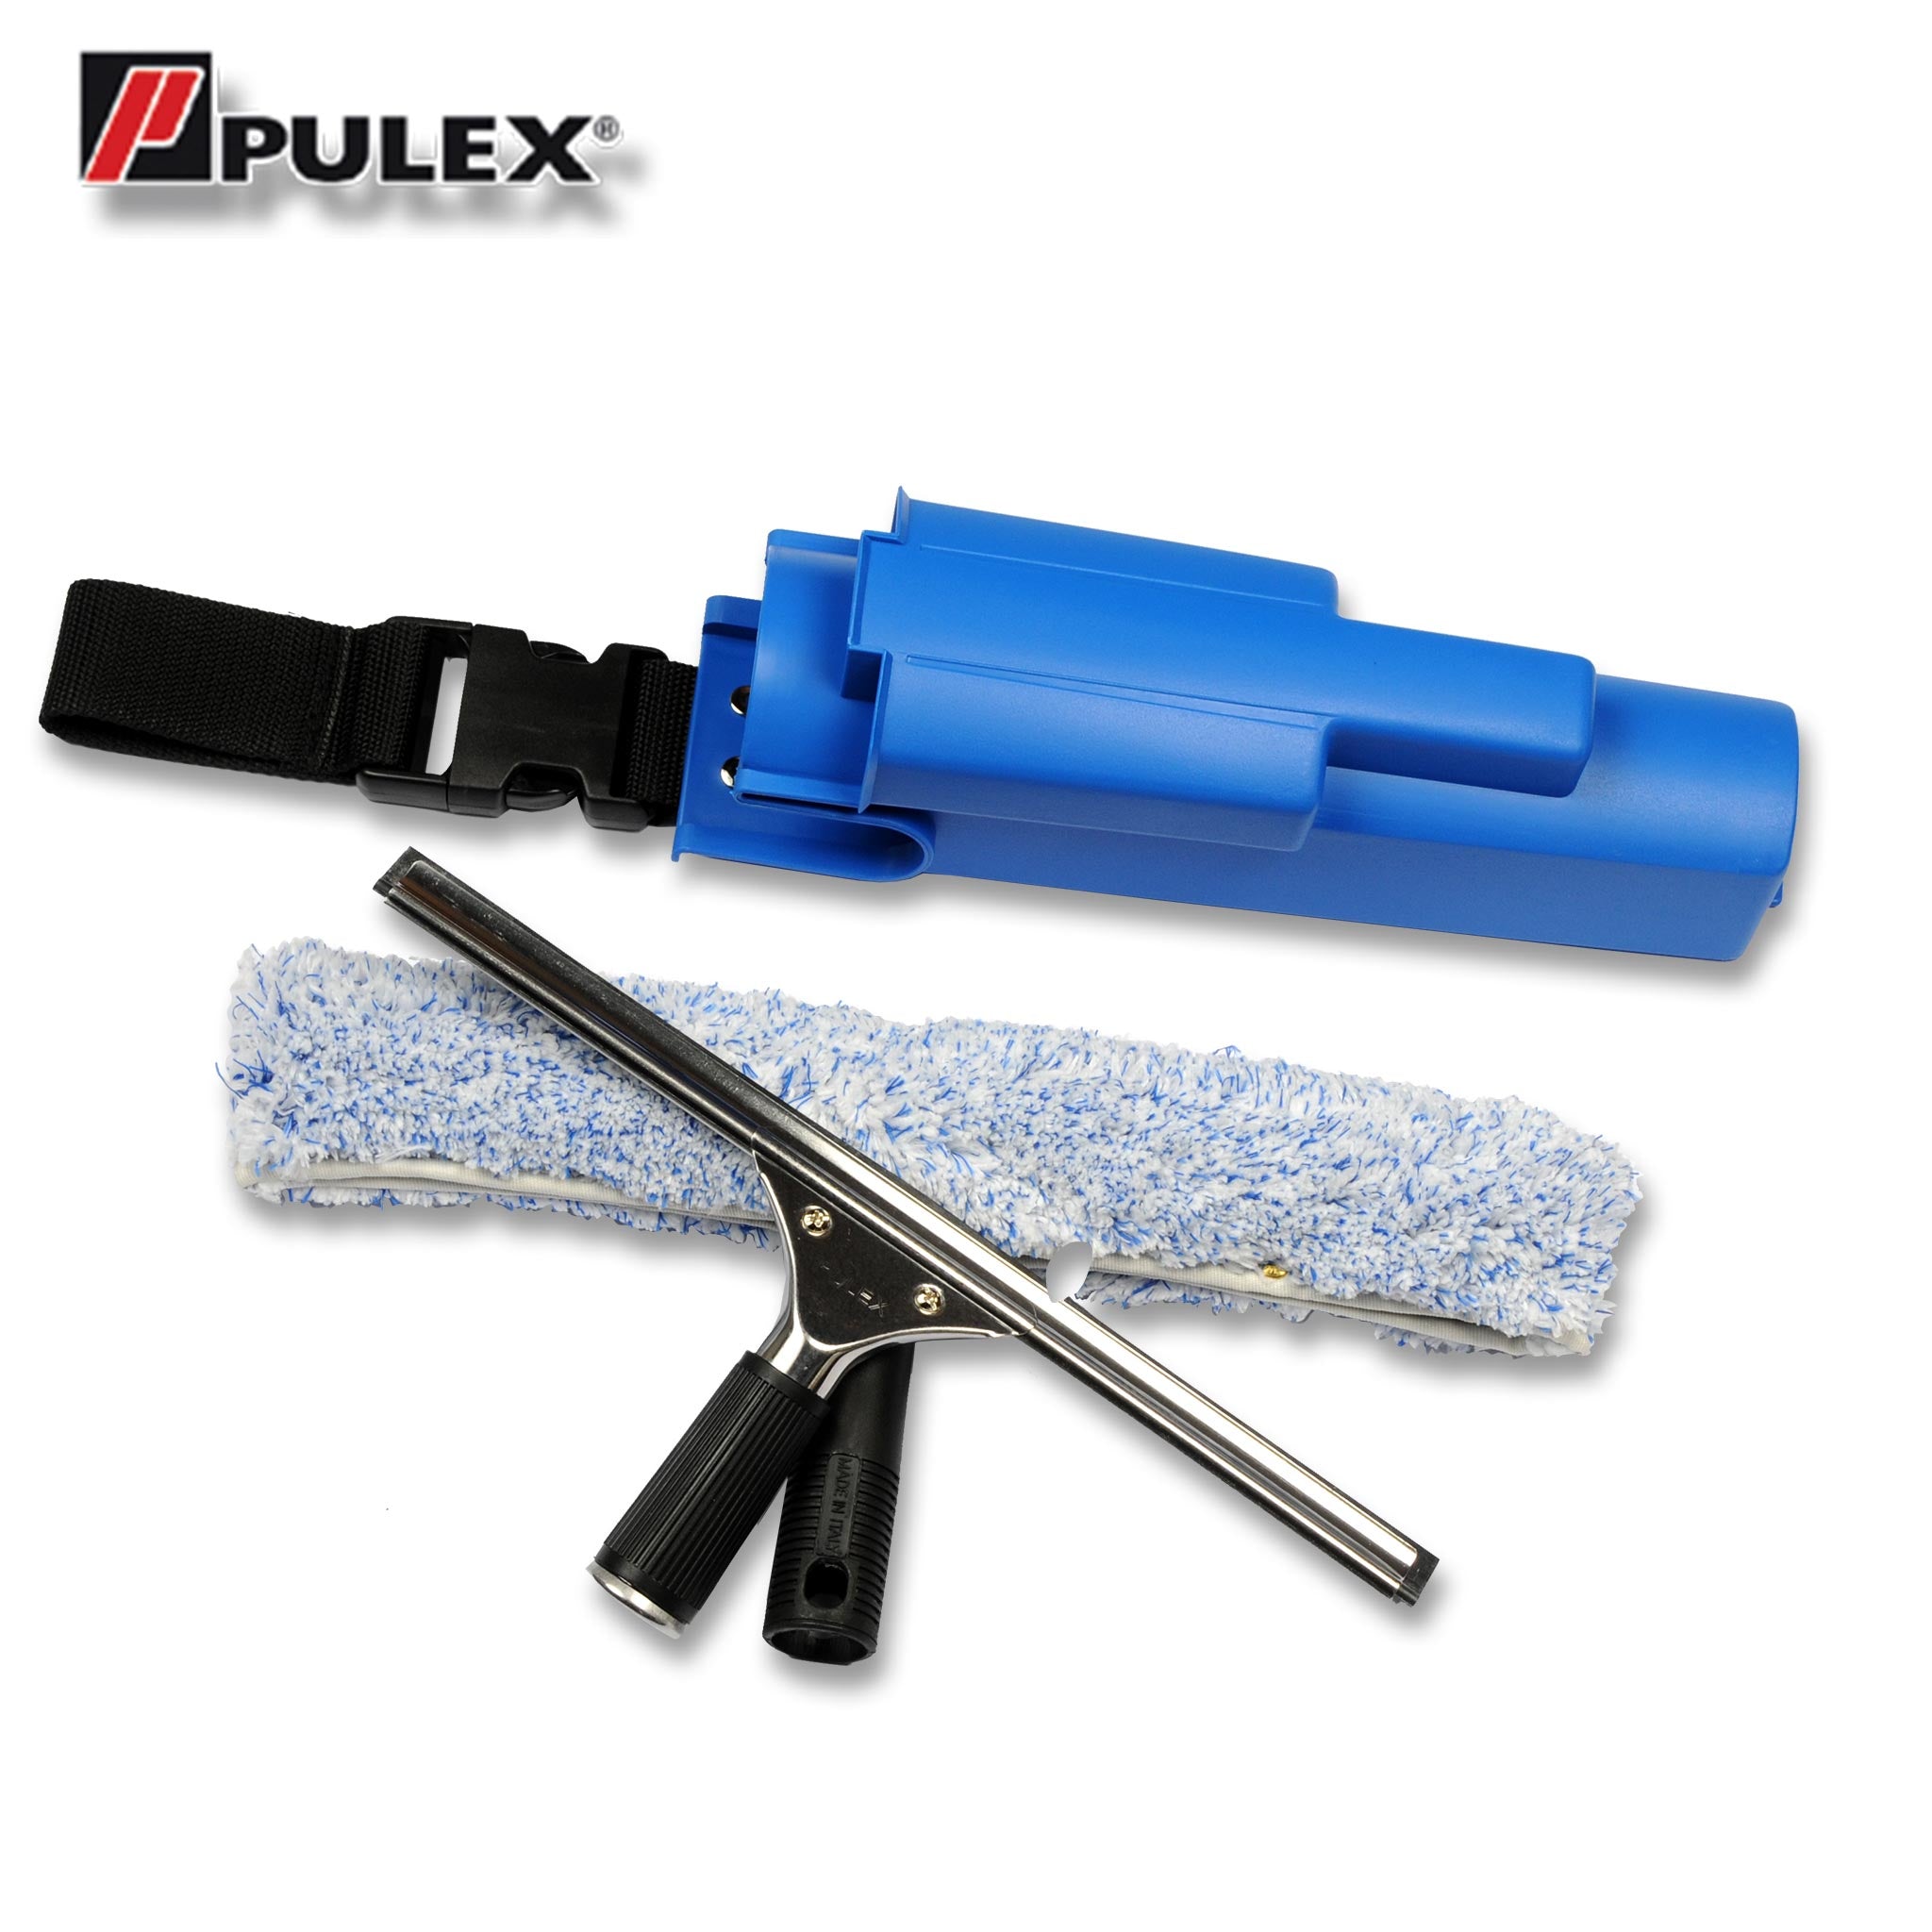 Pulex Combi Inox Kit